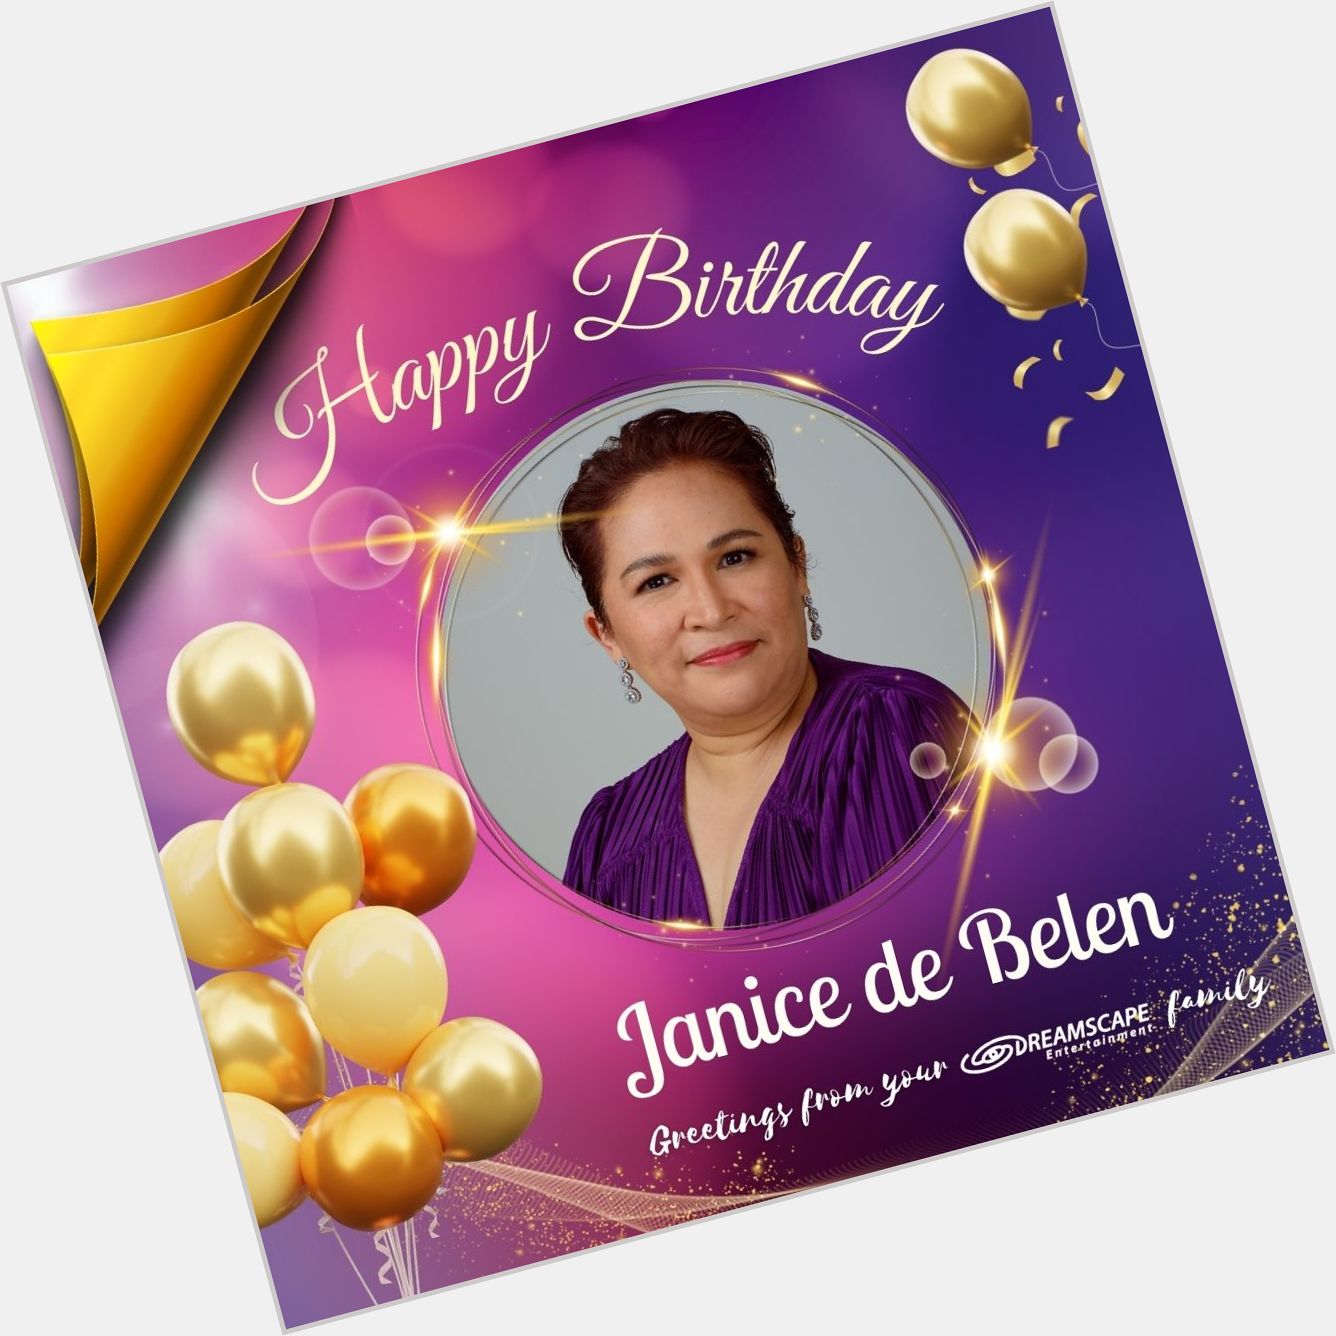 Happy Birthday, Janice de Belen!   